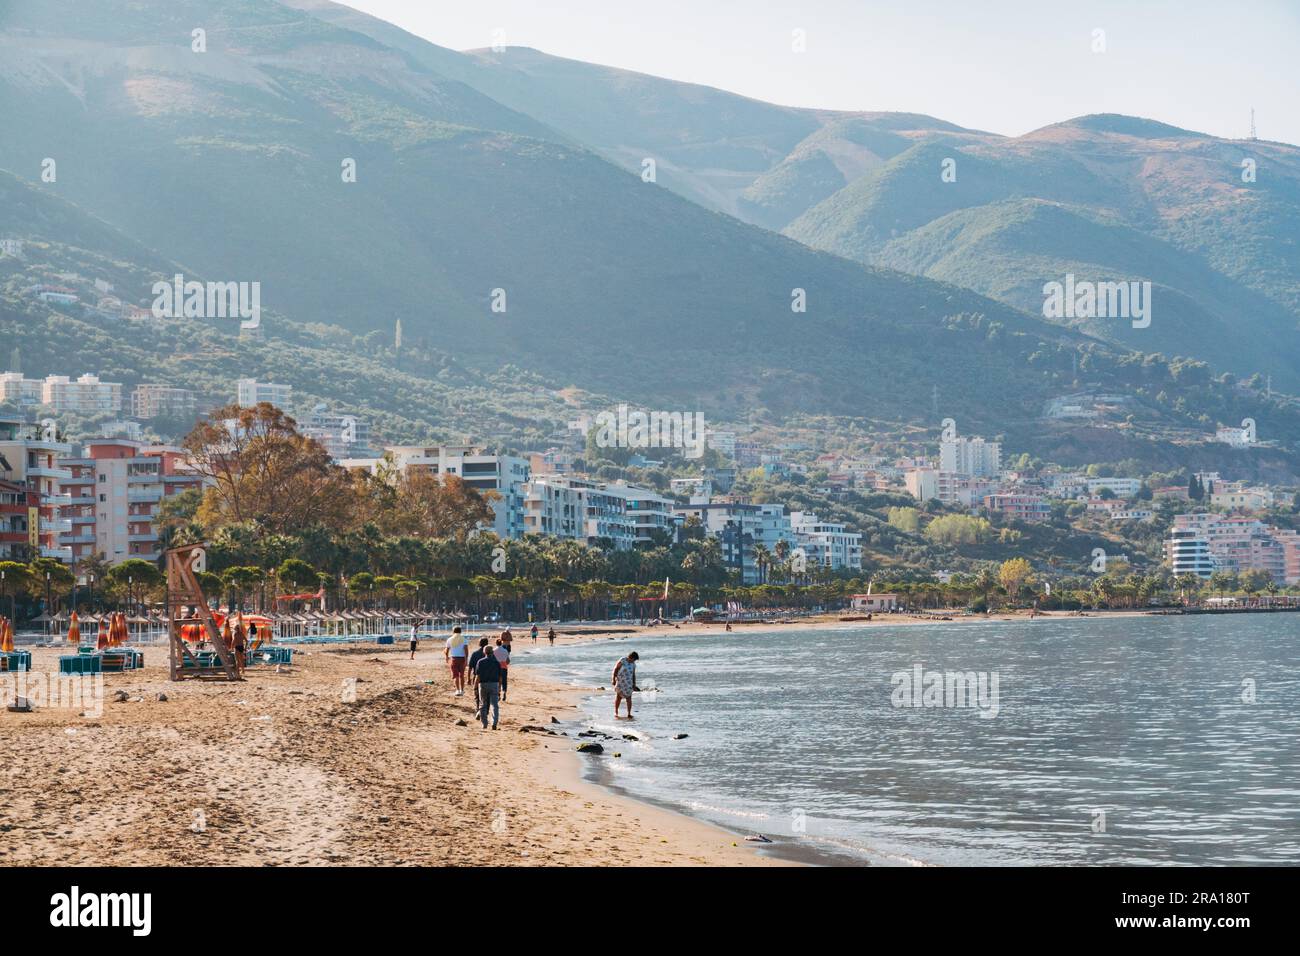 La spiaggia principale della città costiera di Vlorë, nell'Albania meridionale Foto Stock